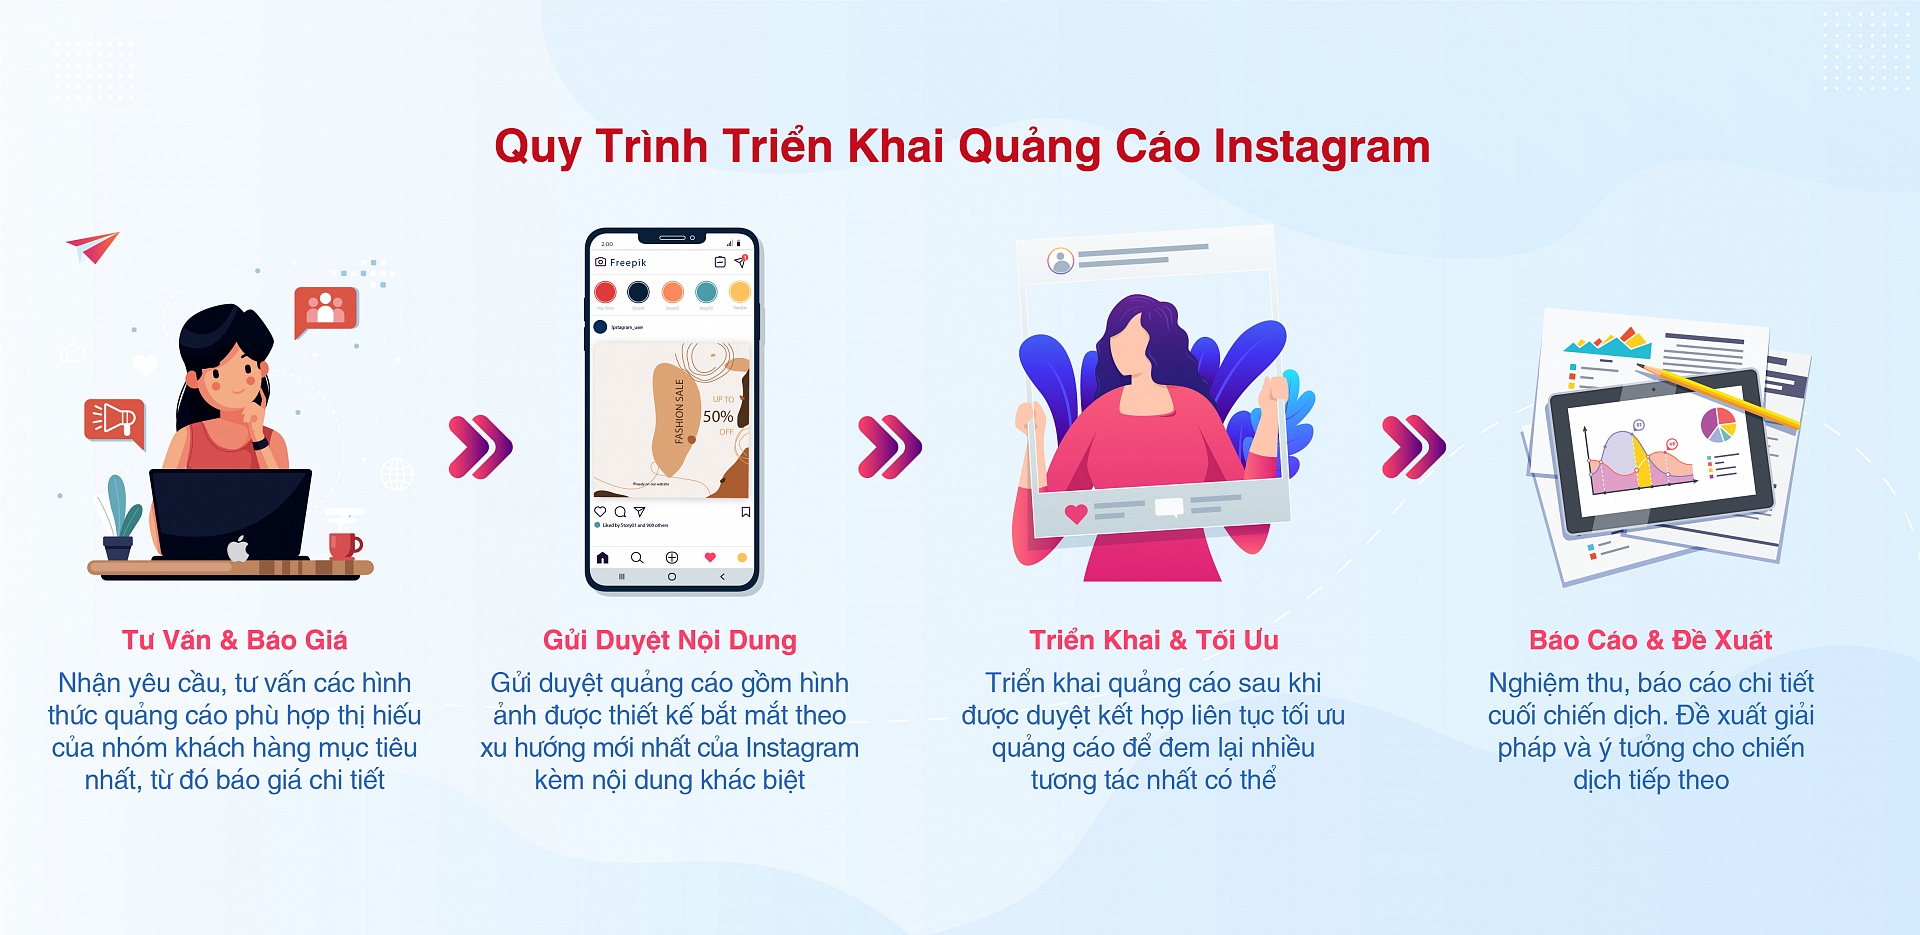 Dich vu Quang cao Instagram